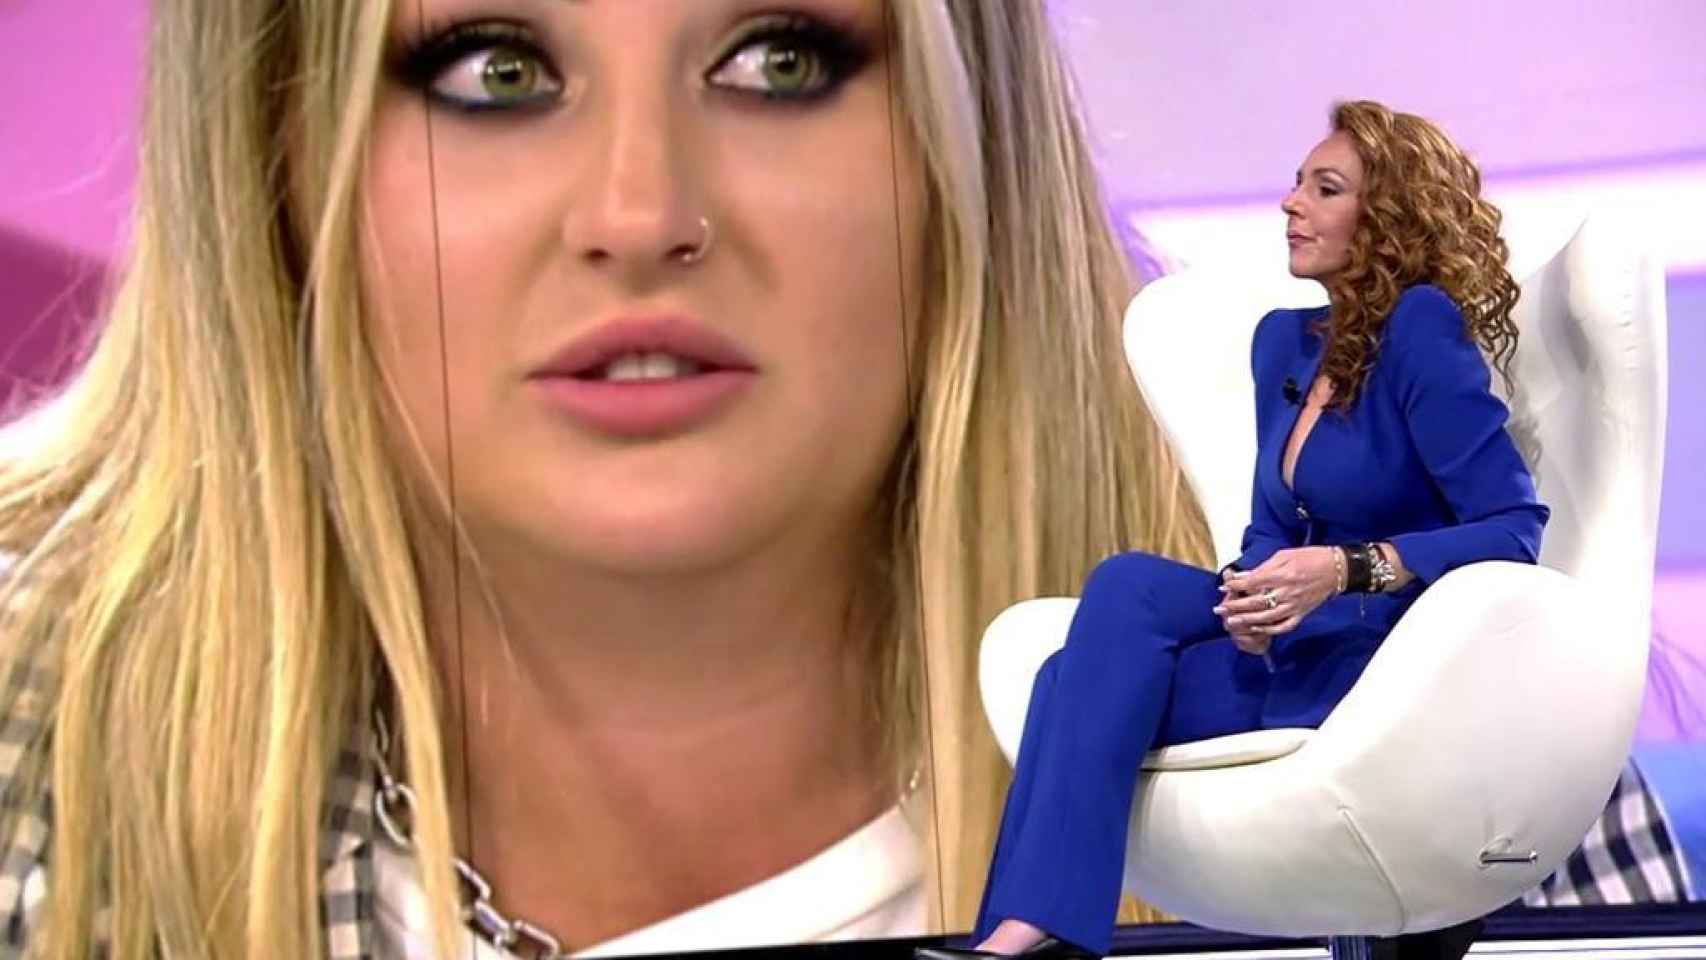 La entrevista de Rocío Carrasco engancha a tres millones de espectadores y debilita a ‘Mujer’